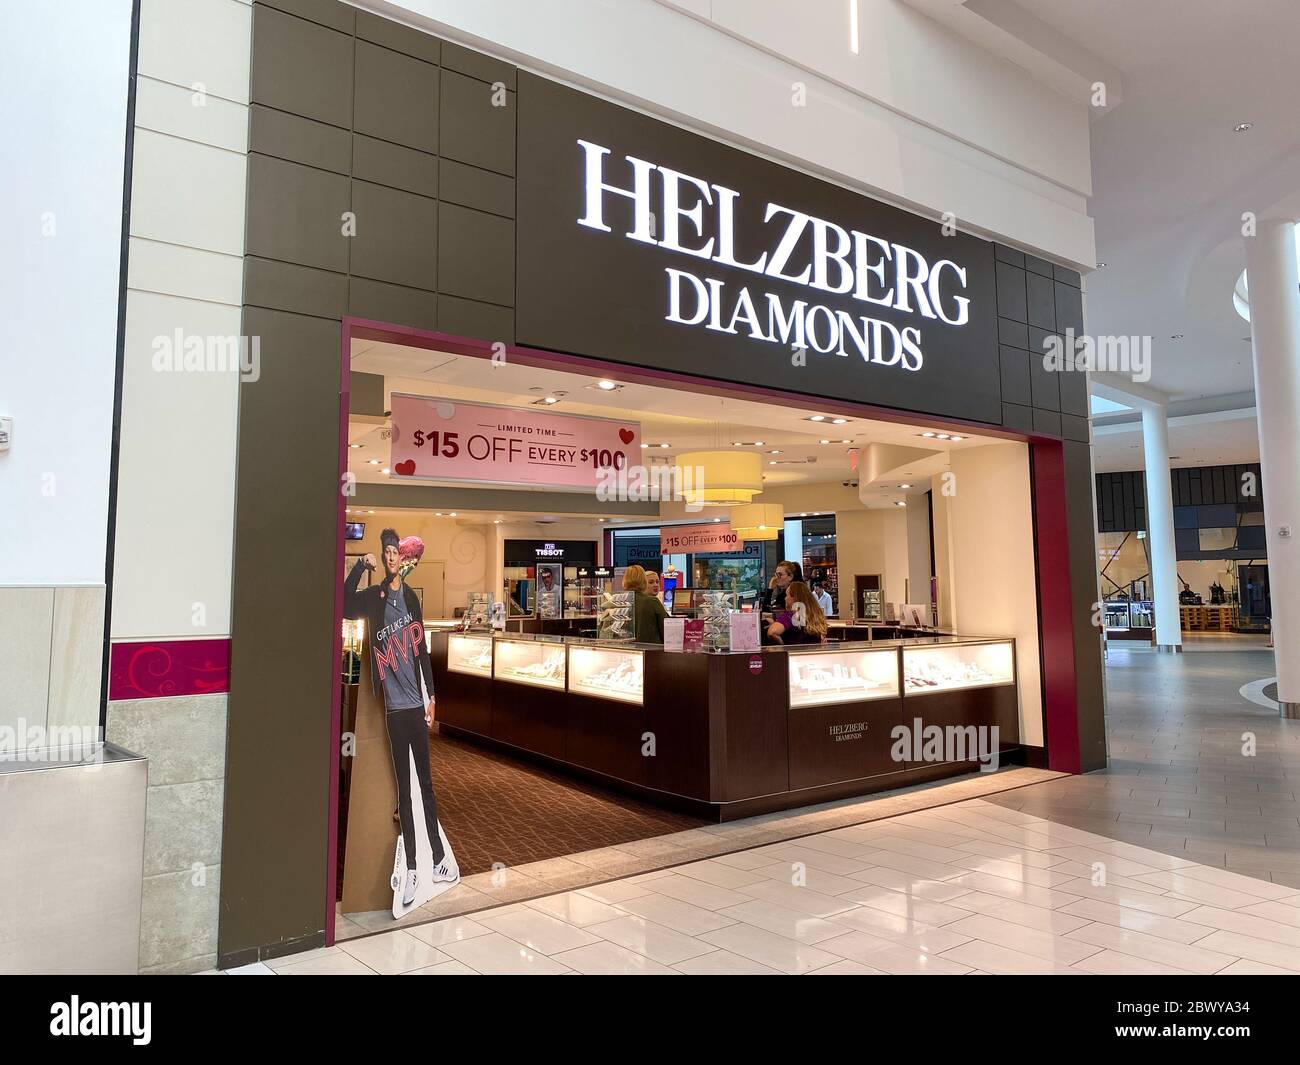 Orlando,FL/USA-17/20: Die Helzberg Diamonds-Schaufenster in der Millenia Mall in Orlando, Florida. Stockfoto